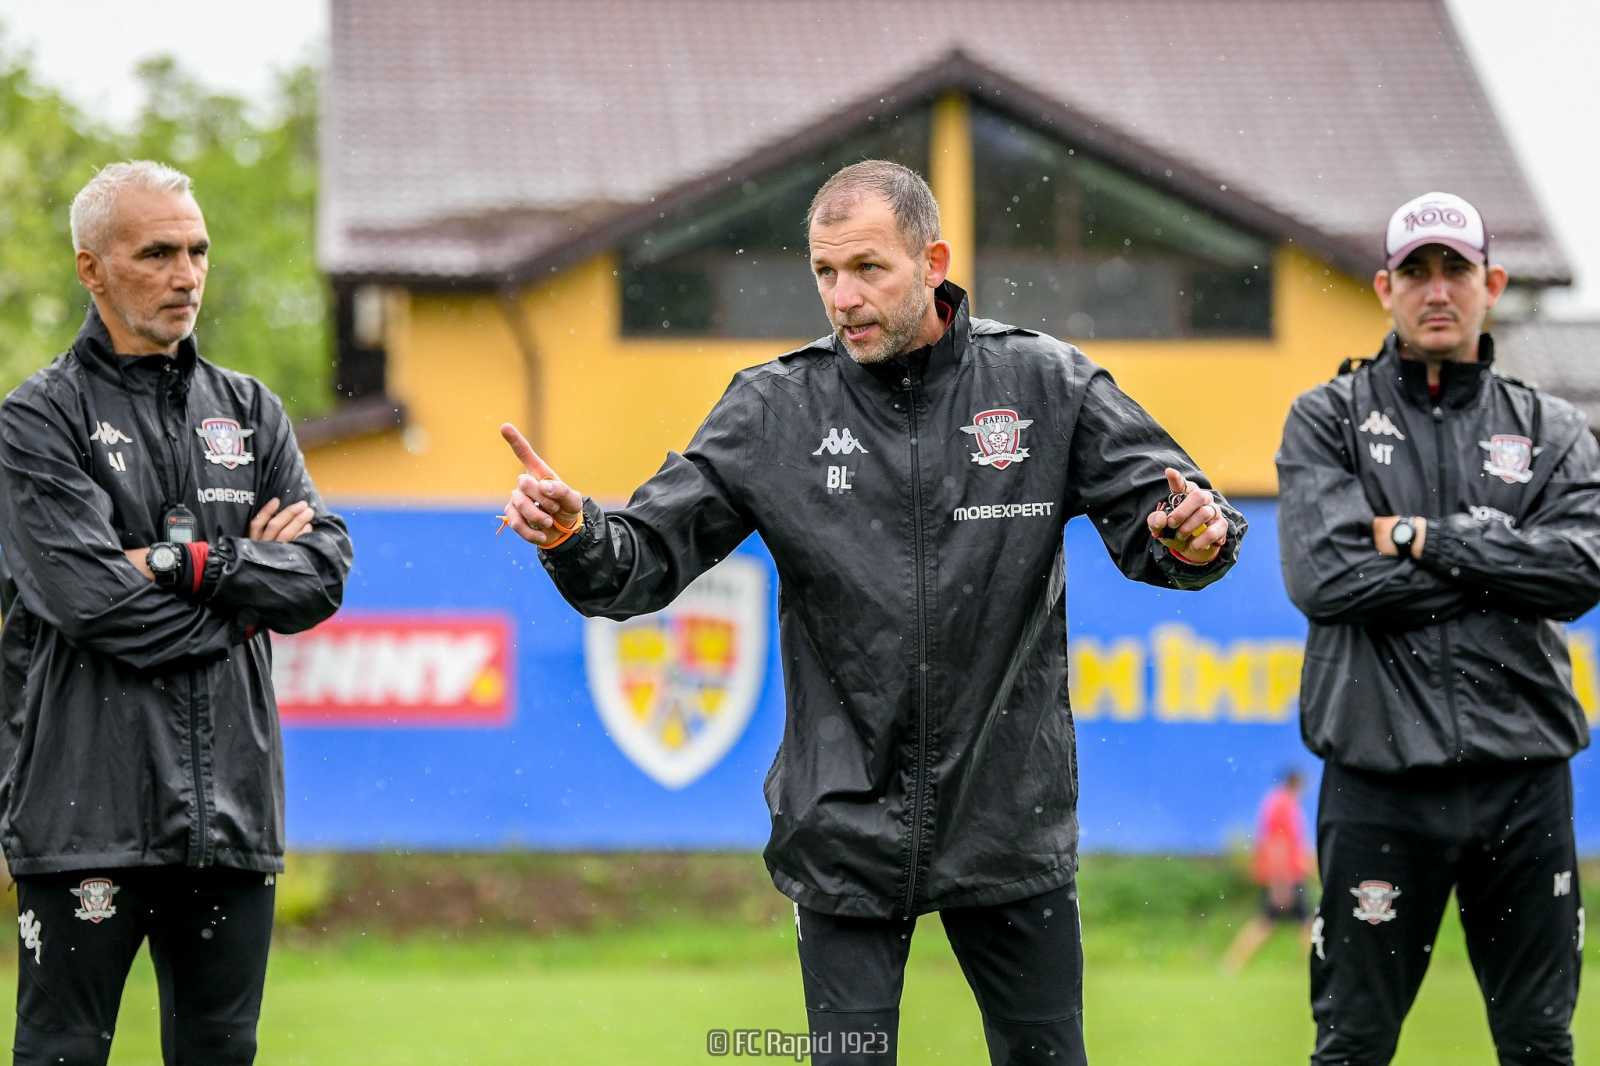 Bogdan Lobonț az FCSB ellen debütál a Rapid edzőjeként | Fotó: FC Rapid/Facebook